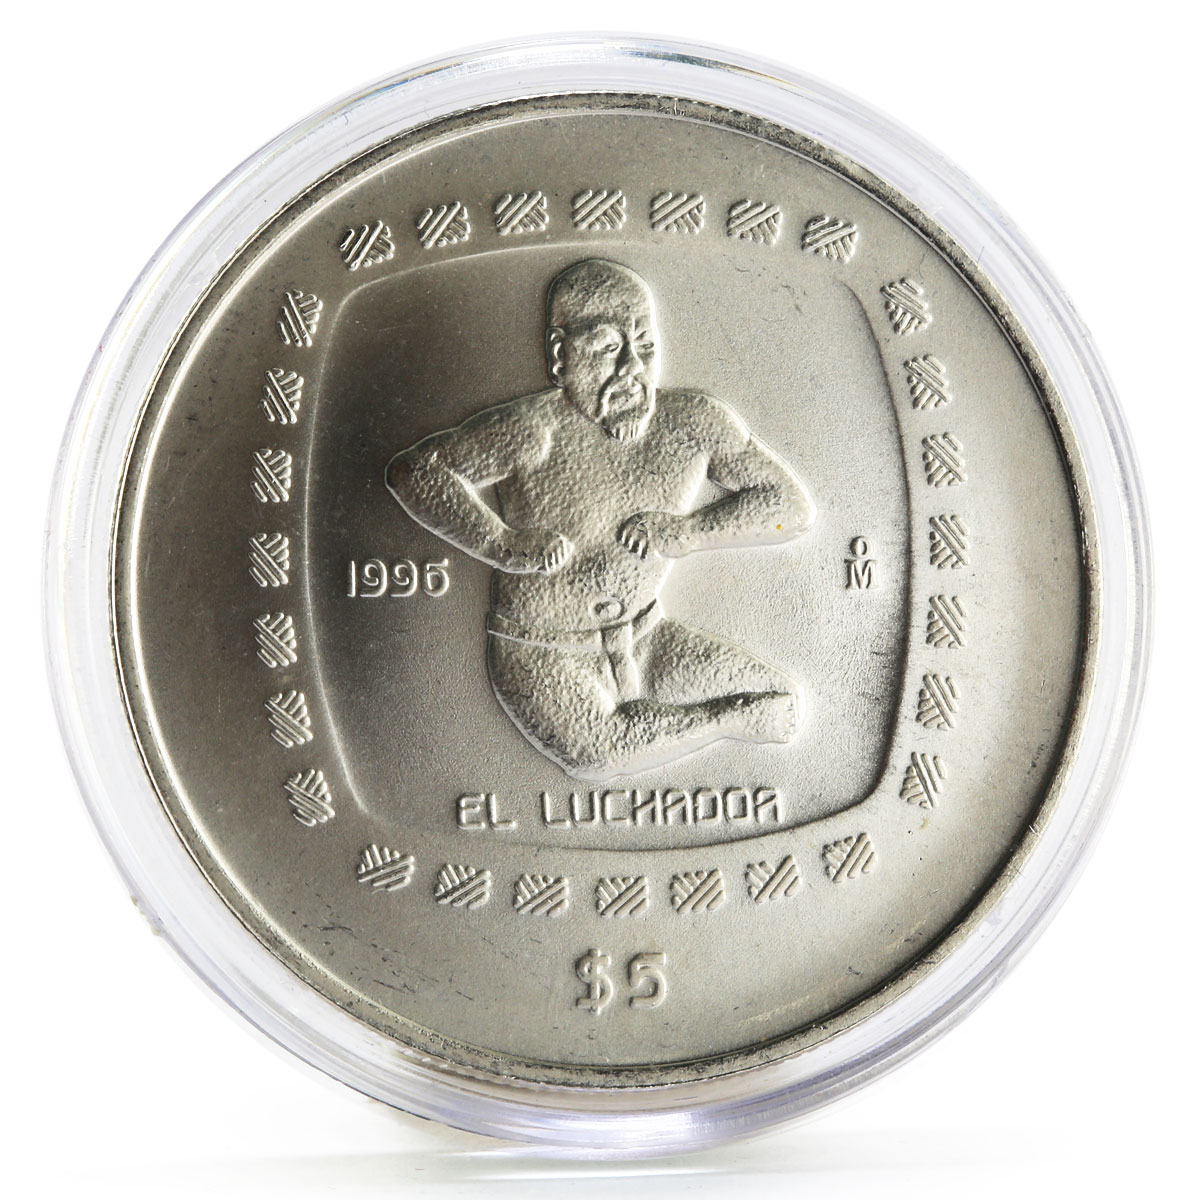 Mexico 5 pesos Precolombina series El Luchador silver coin 1996